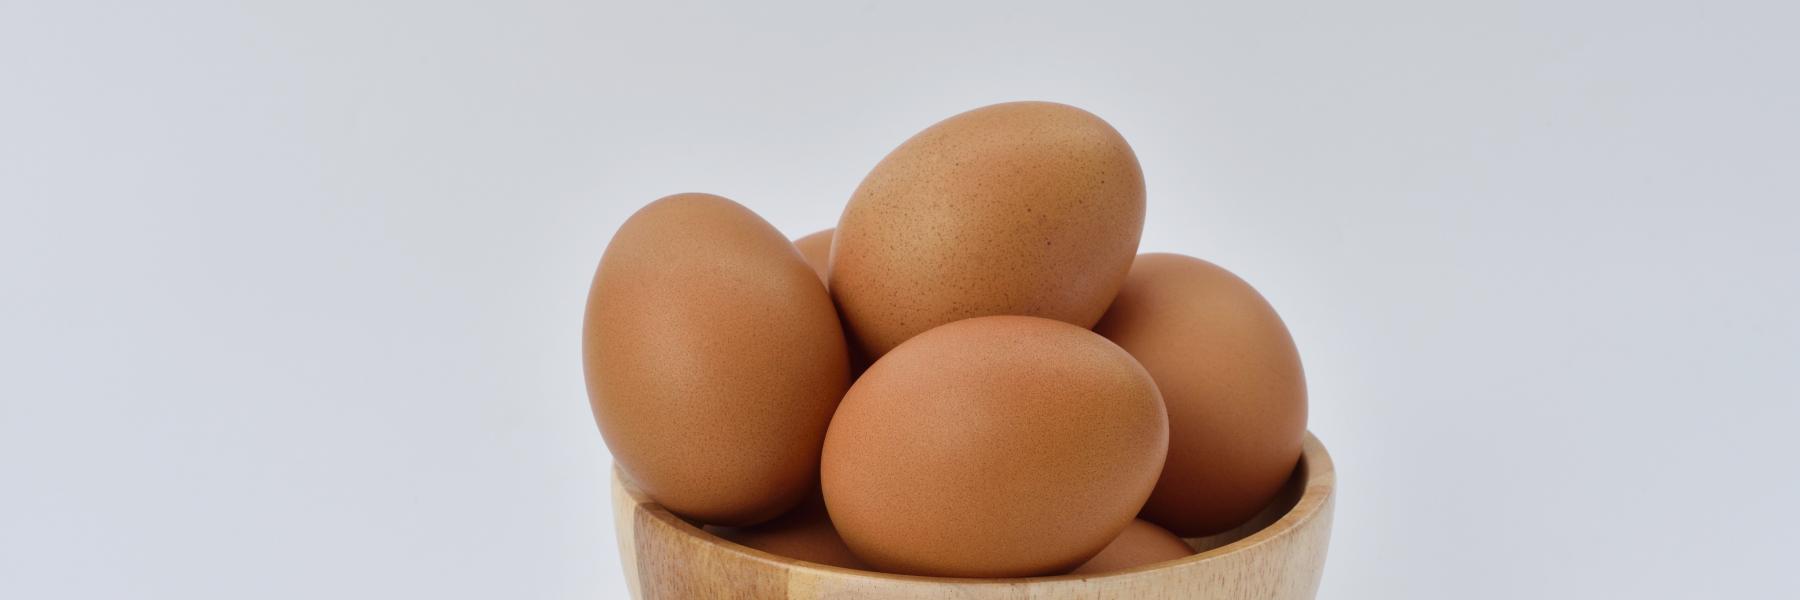 هل يمكن أكل البيض بعد تاريخ انتهاء الصلاحية؟ 